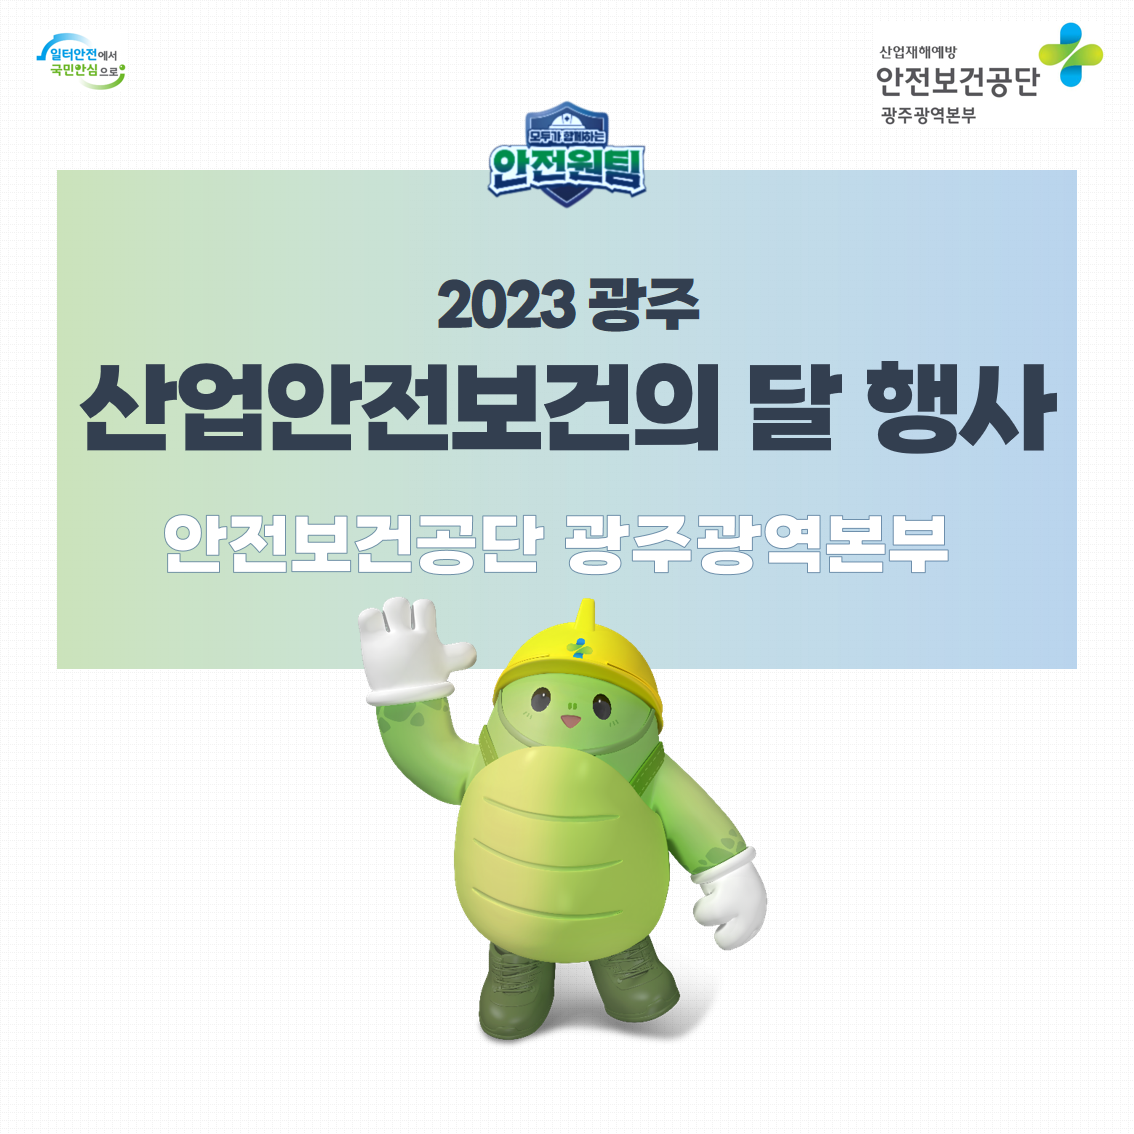 [광주] 2023년 광주 산업안전보건의 달 행사